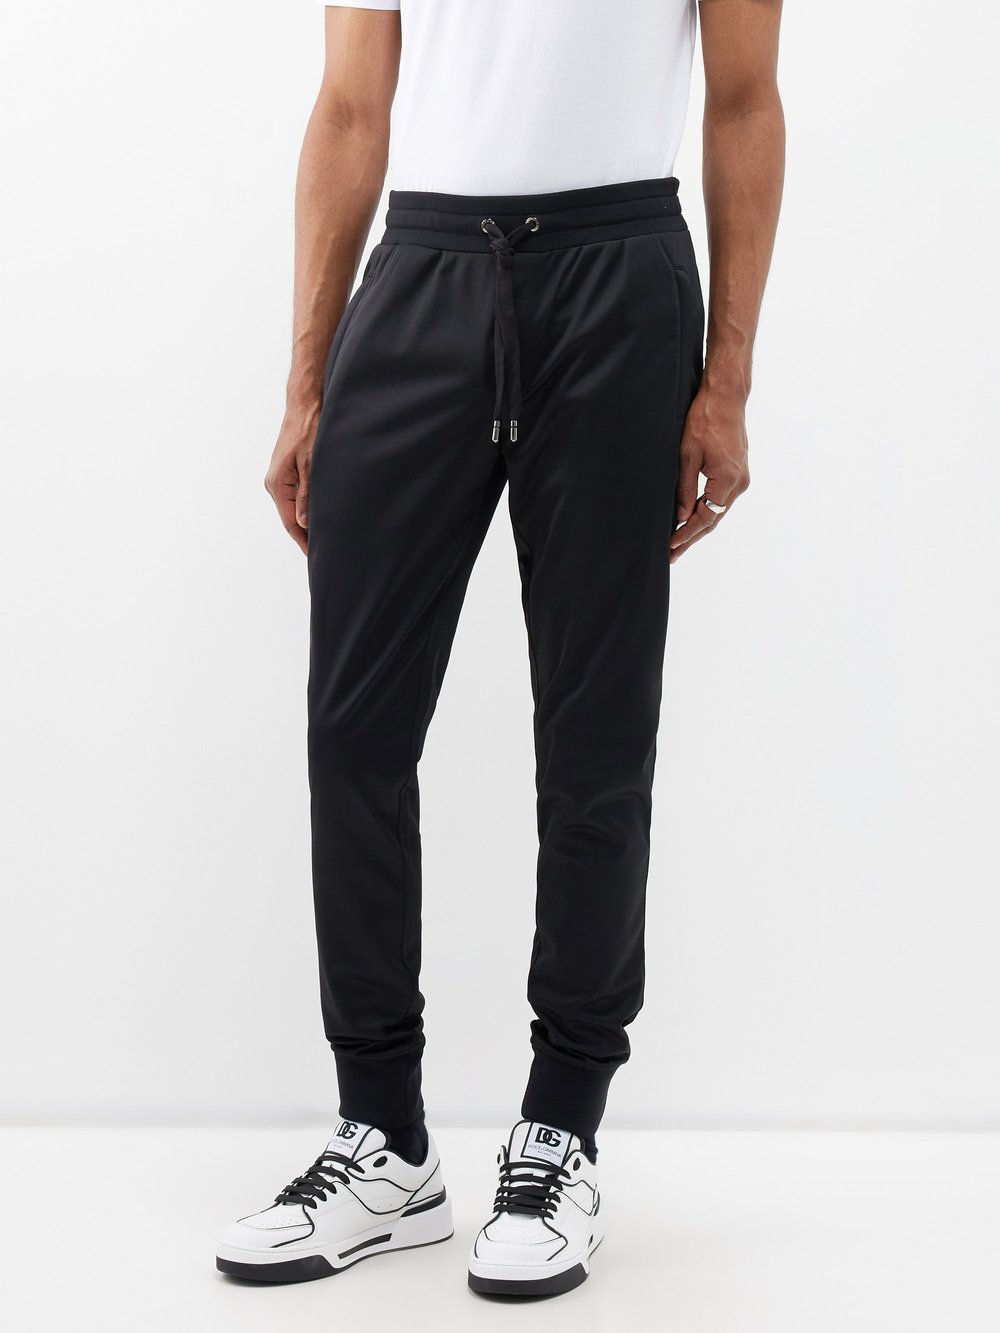 Спортивные брюки из джерси с бляшкой-логотипом Dolce & Gabbana, черный